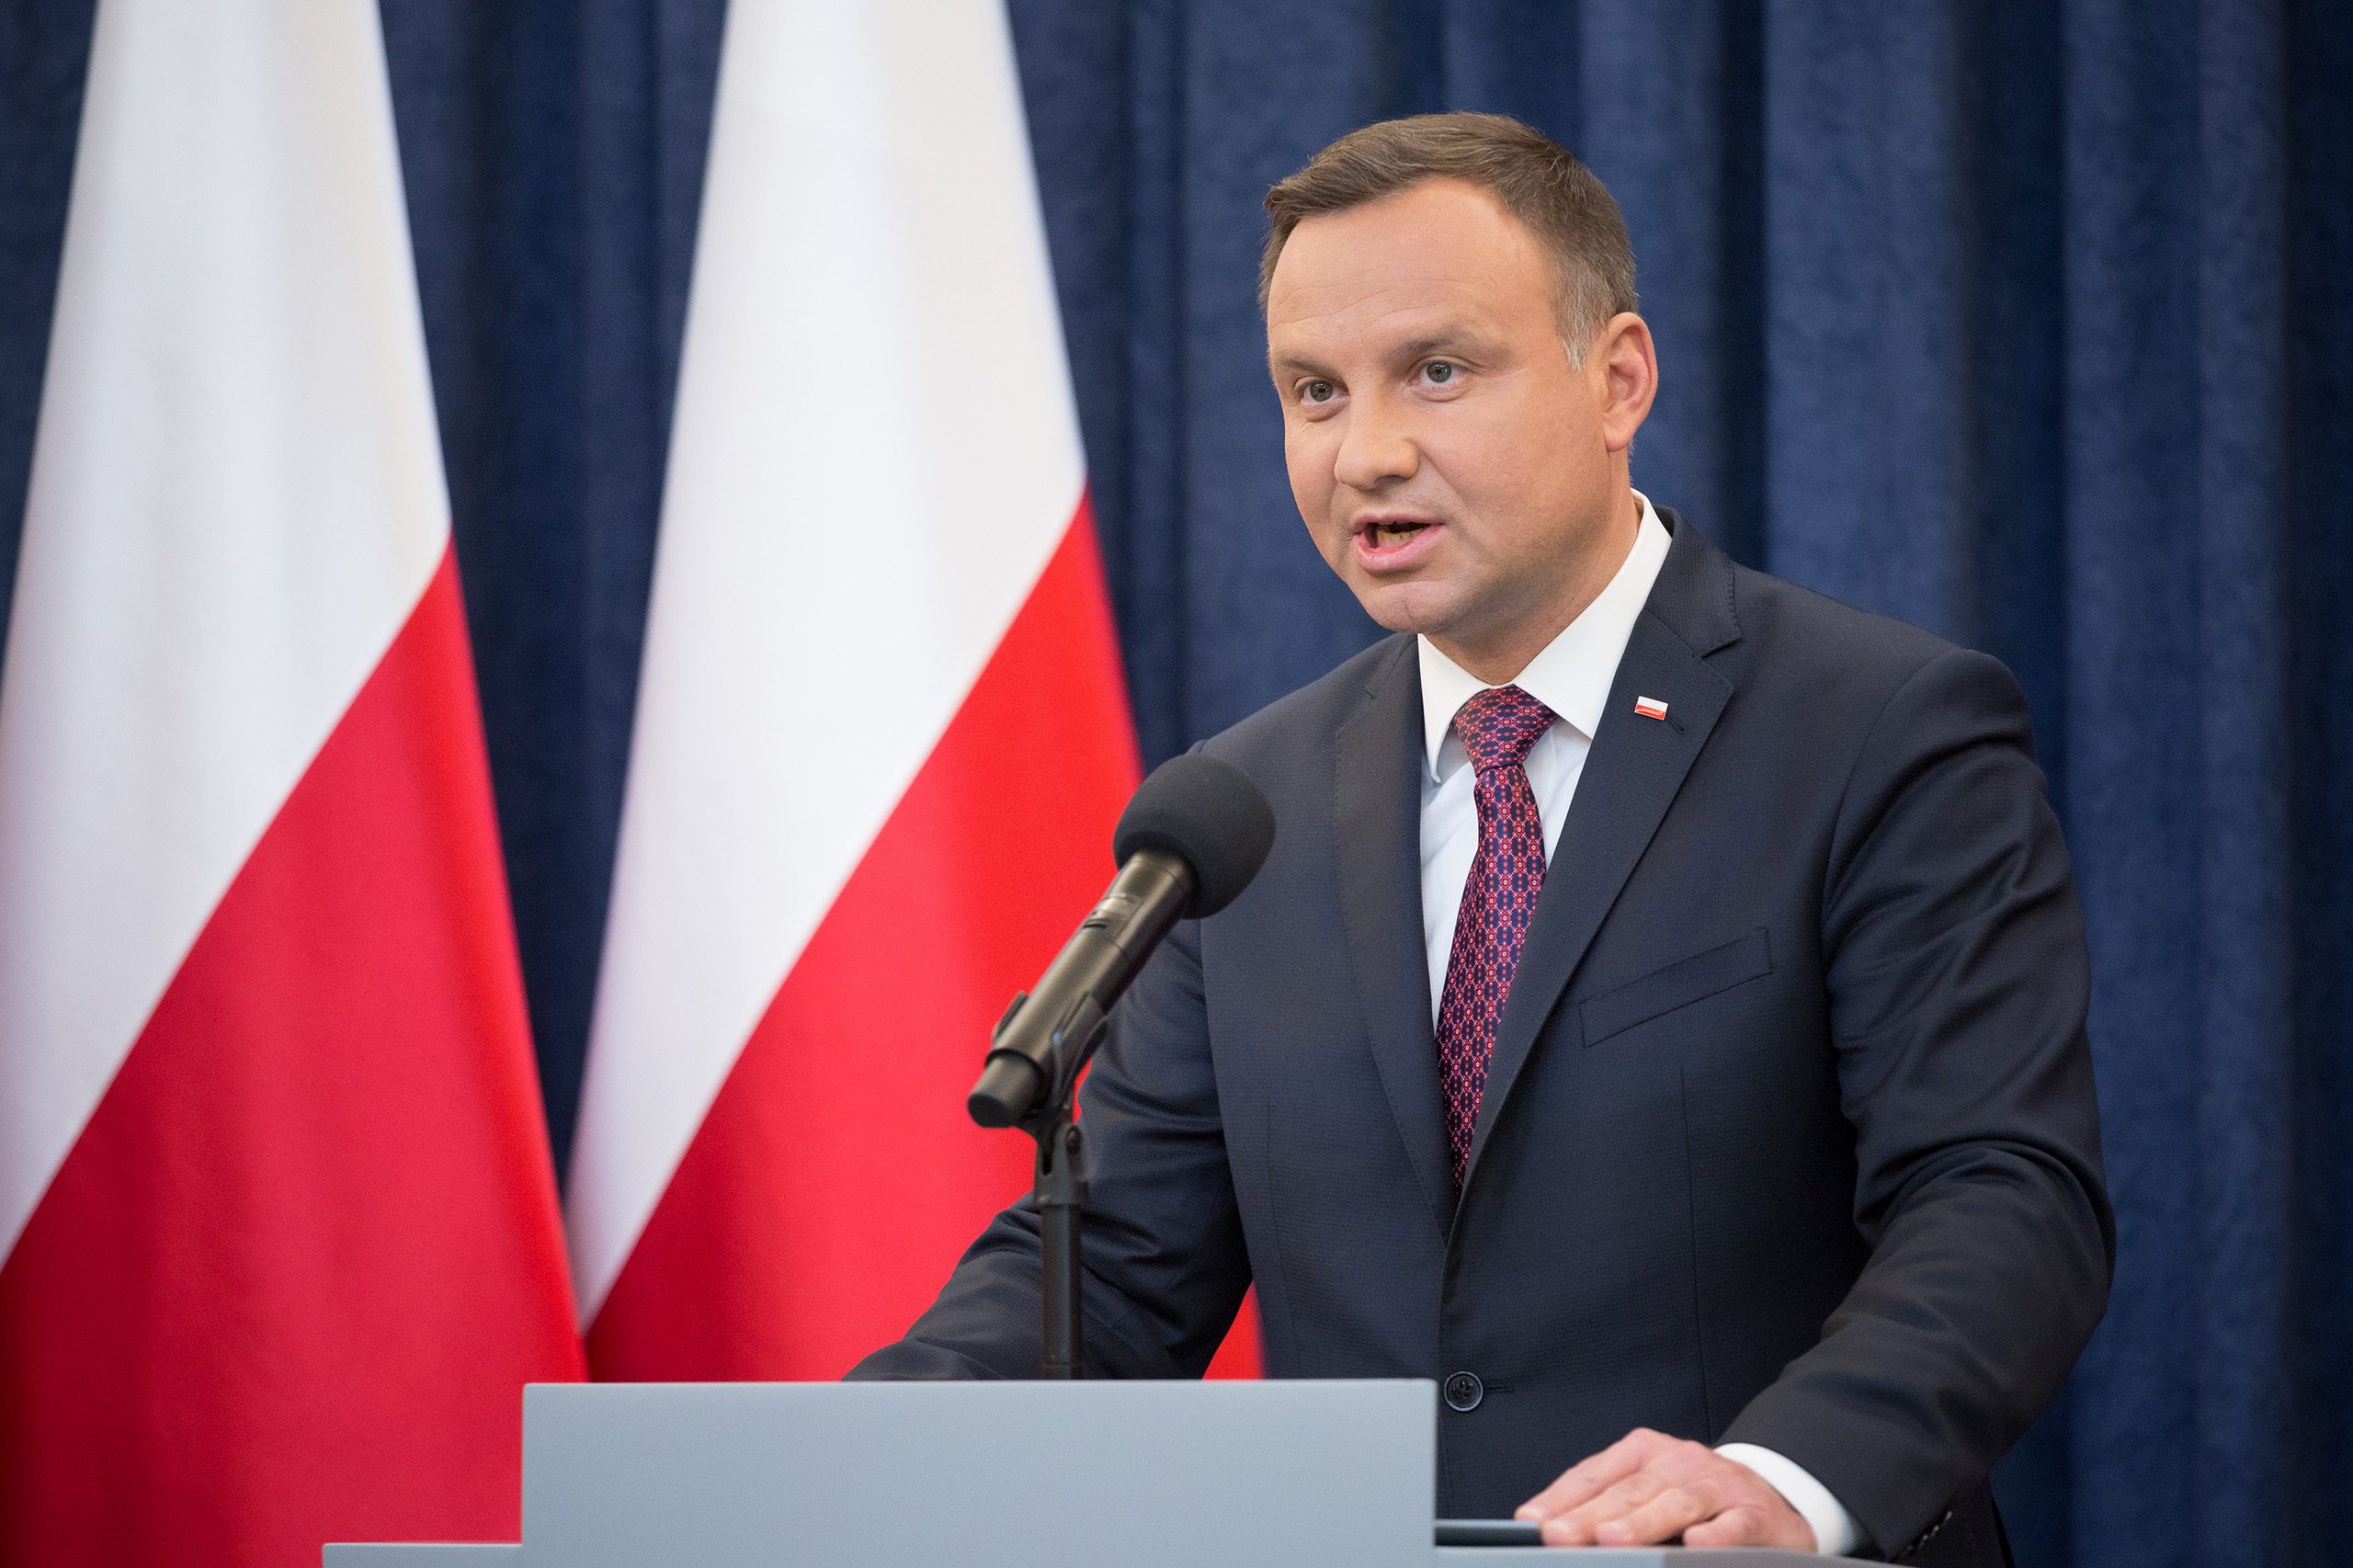 presidenti polak flet pa diplomaci per ukrainen ne lidhje me territoret e pushtuara nga rusia dyshoj se